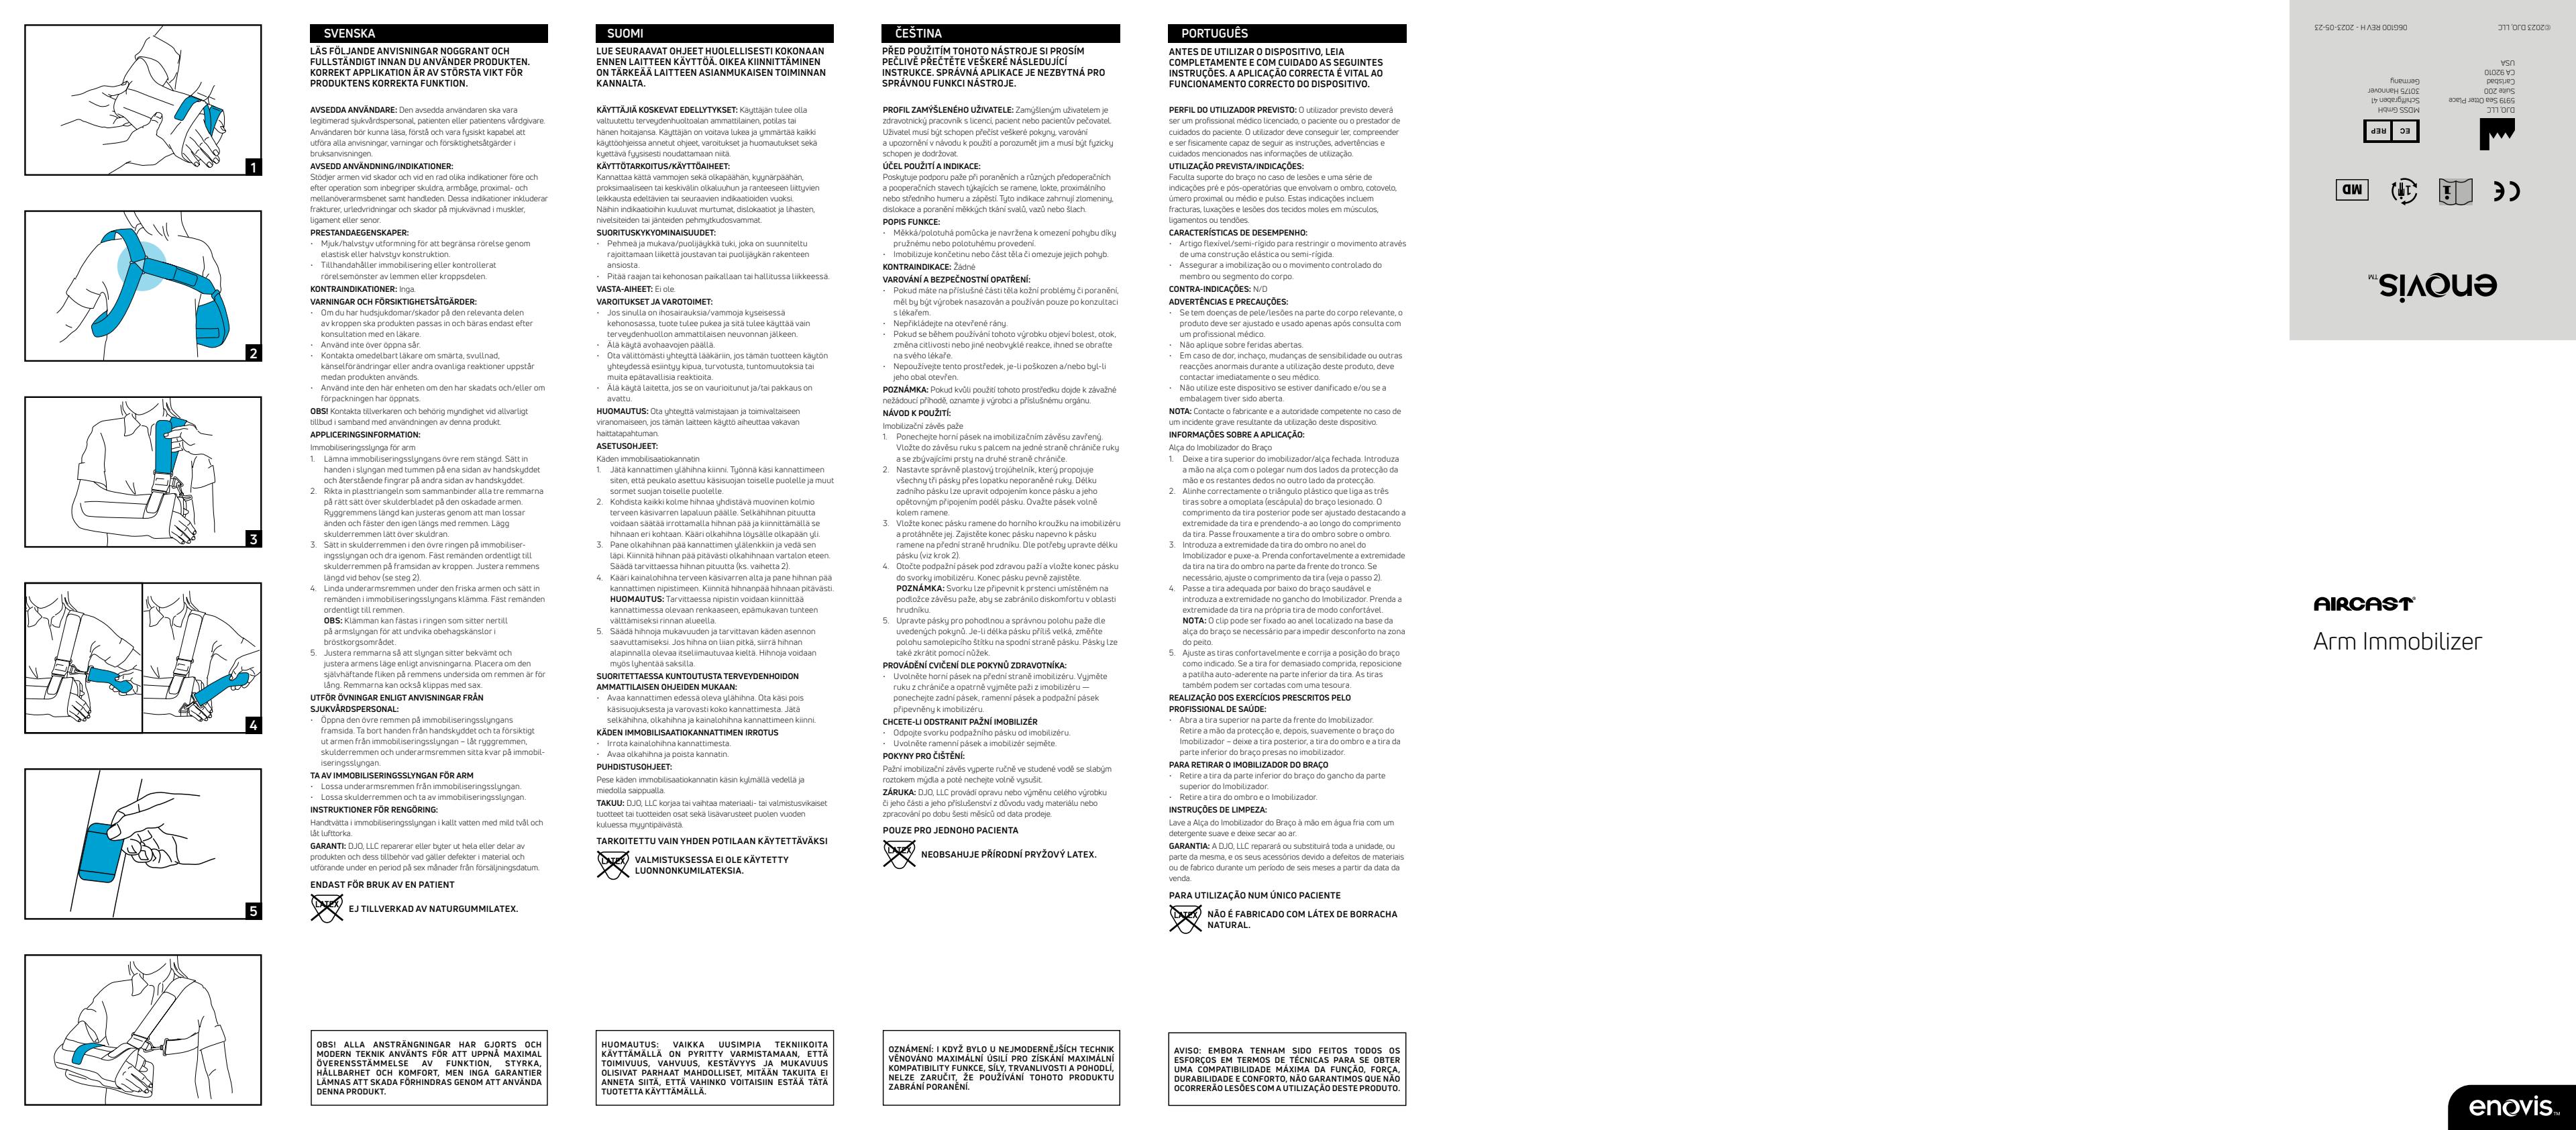 Gebrauchsanleitung_AIRCAST_Arm-Immobilizer_06G100-REV-E-2015.pdf